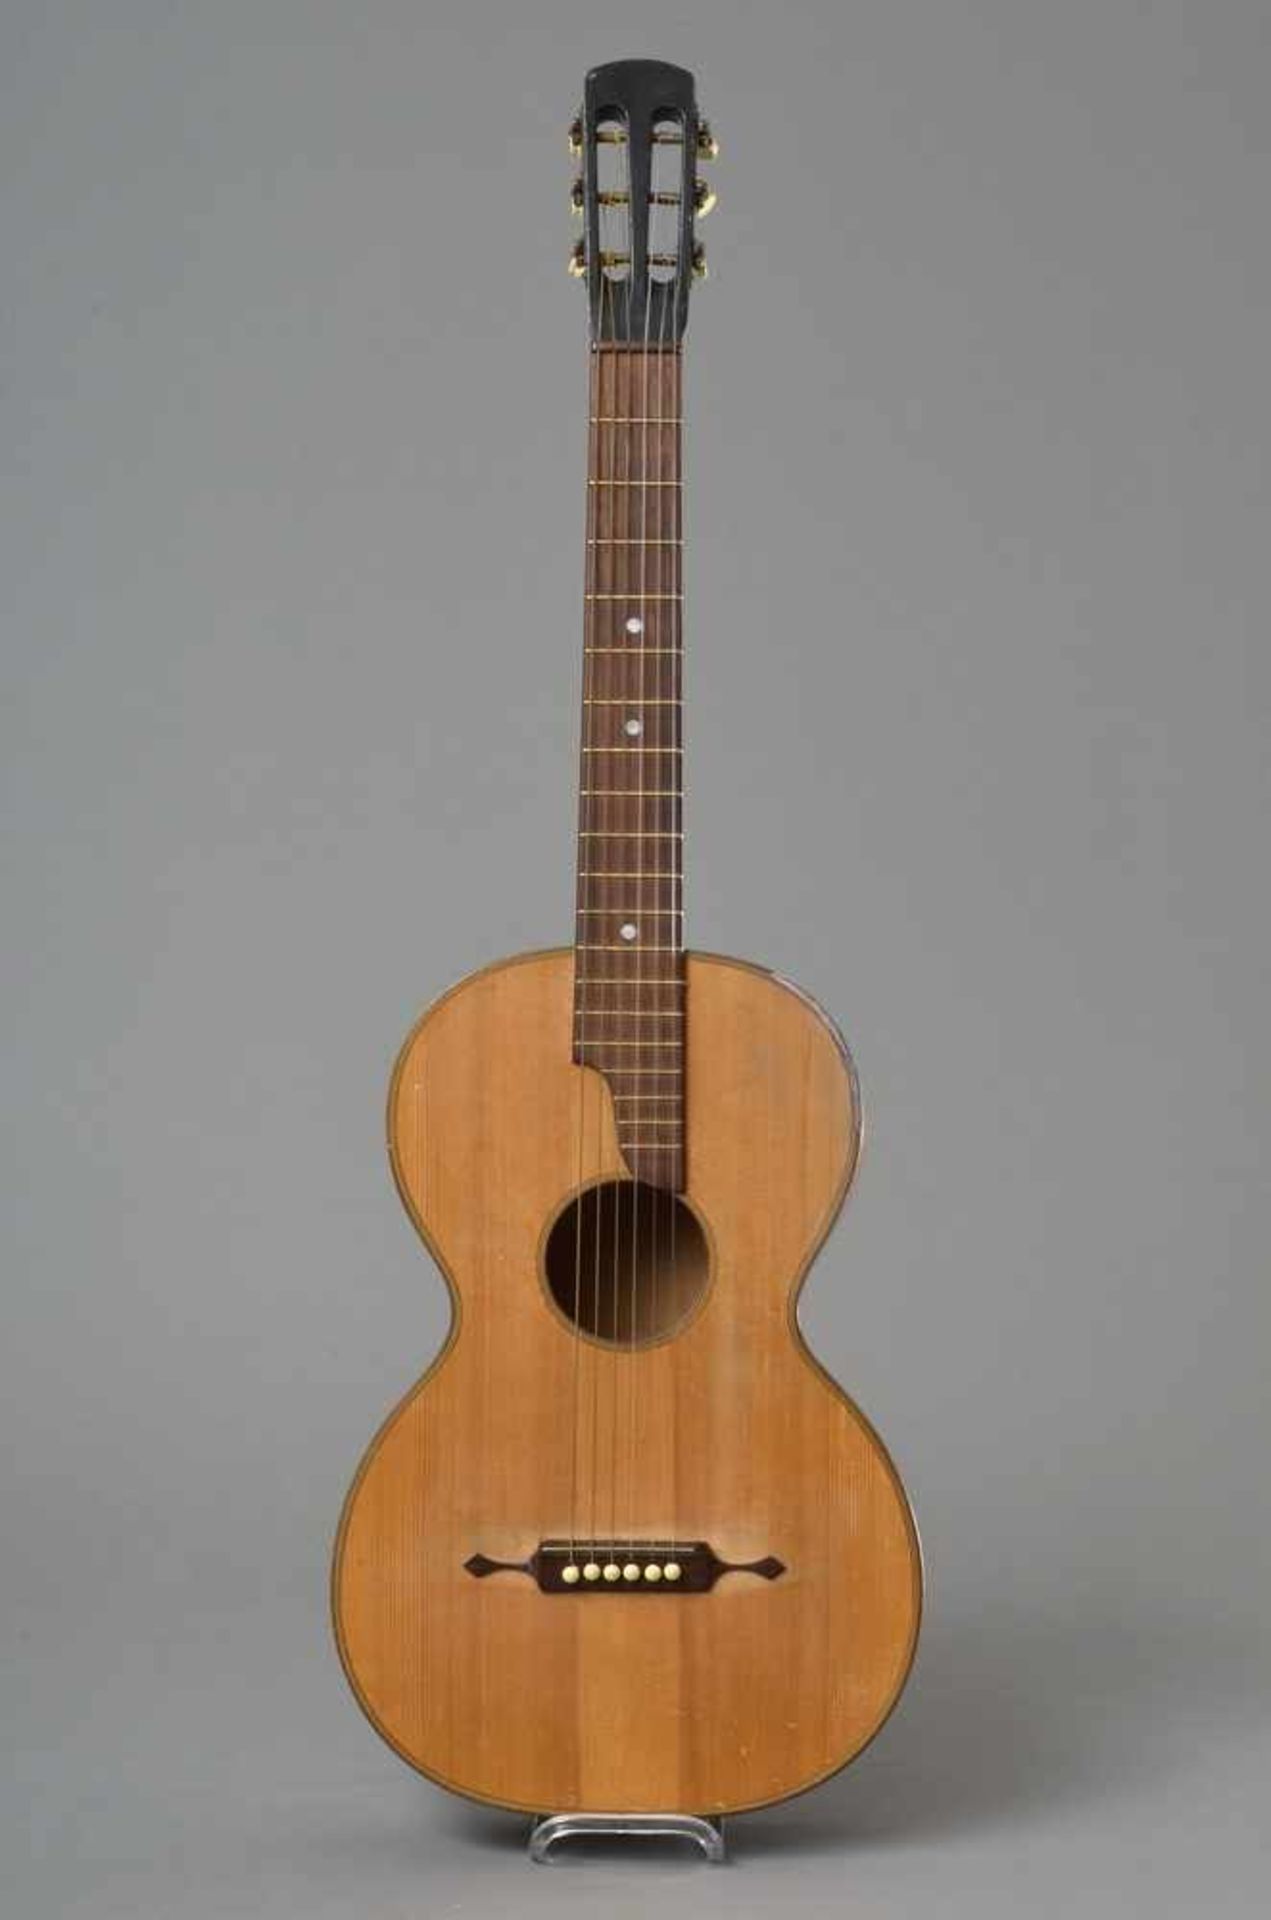 Historische Gitarre, Mensur 62cm, Gesamtlänge 93cm, Saitenhöhe 4-5mm, ca. 100 Jahre, spielbar - Image 8 of 8